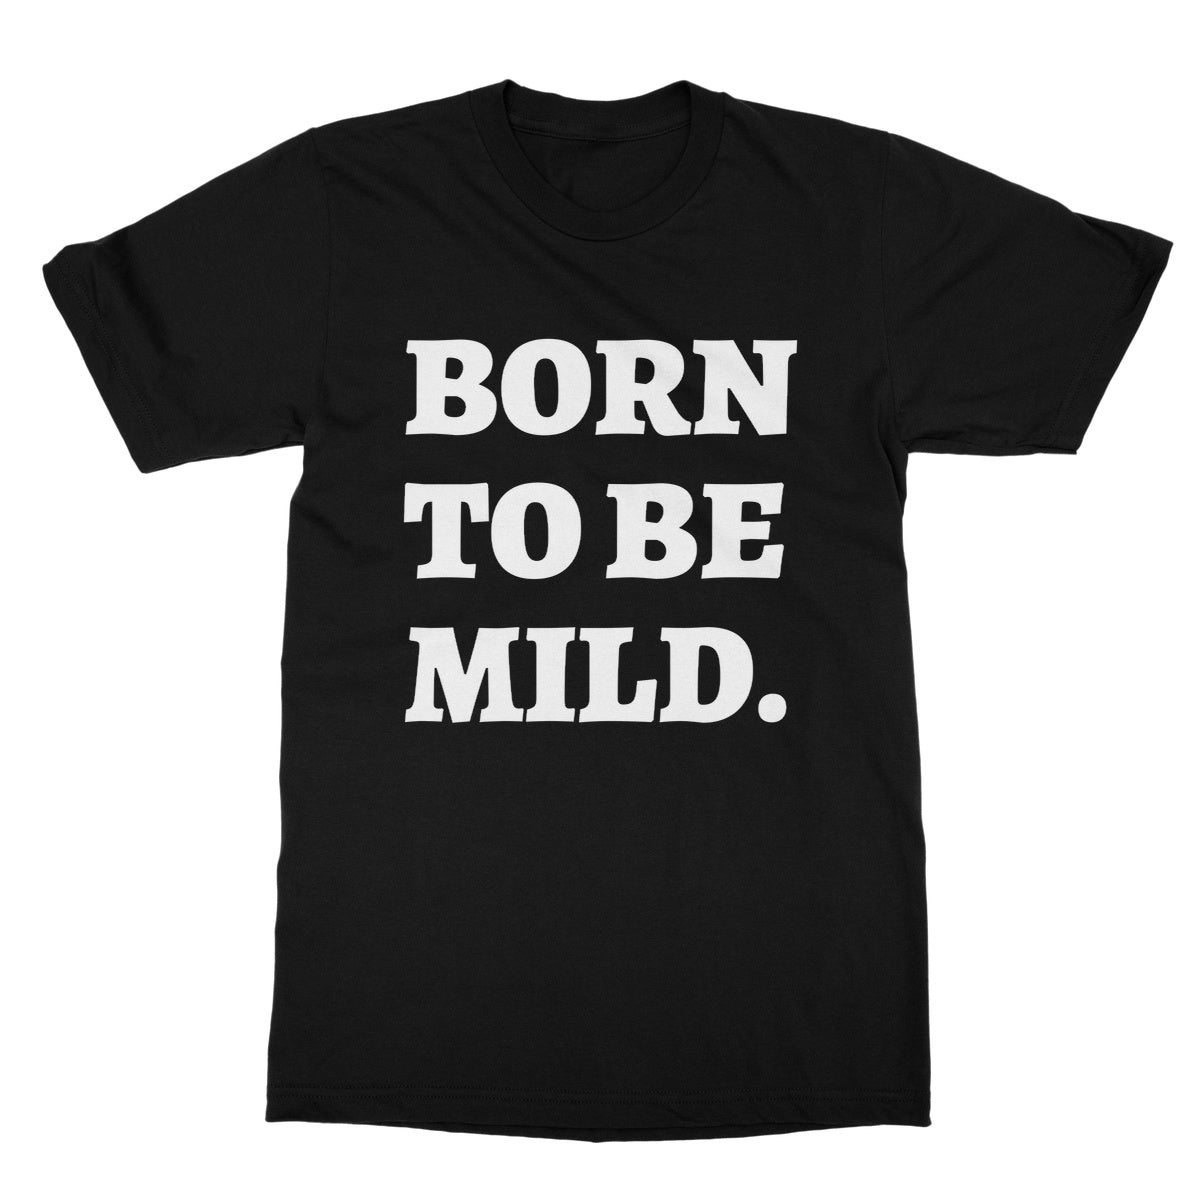 born to be mild t shirt black